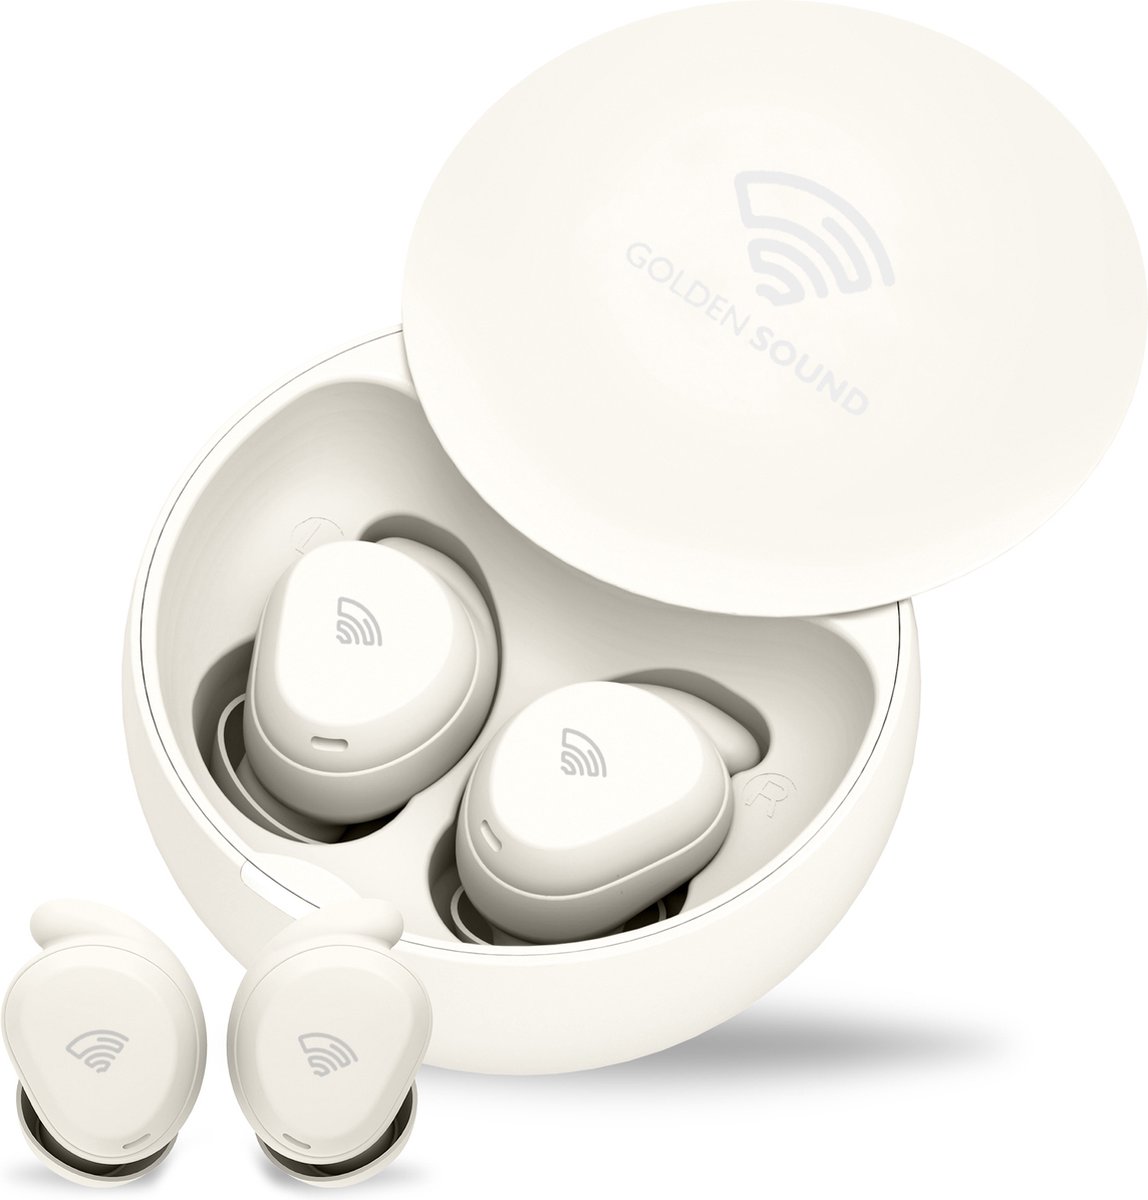 Golden Sound draadloze oordopjes - Oordopjes Slapen - Bluetooth oordopjes - Active Noise Cancelling - Slaap oordoppen - 20dB - Oortjes draadloos - Geschikt voor elke laptop en smartphone